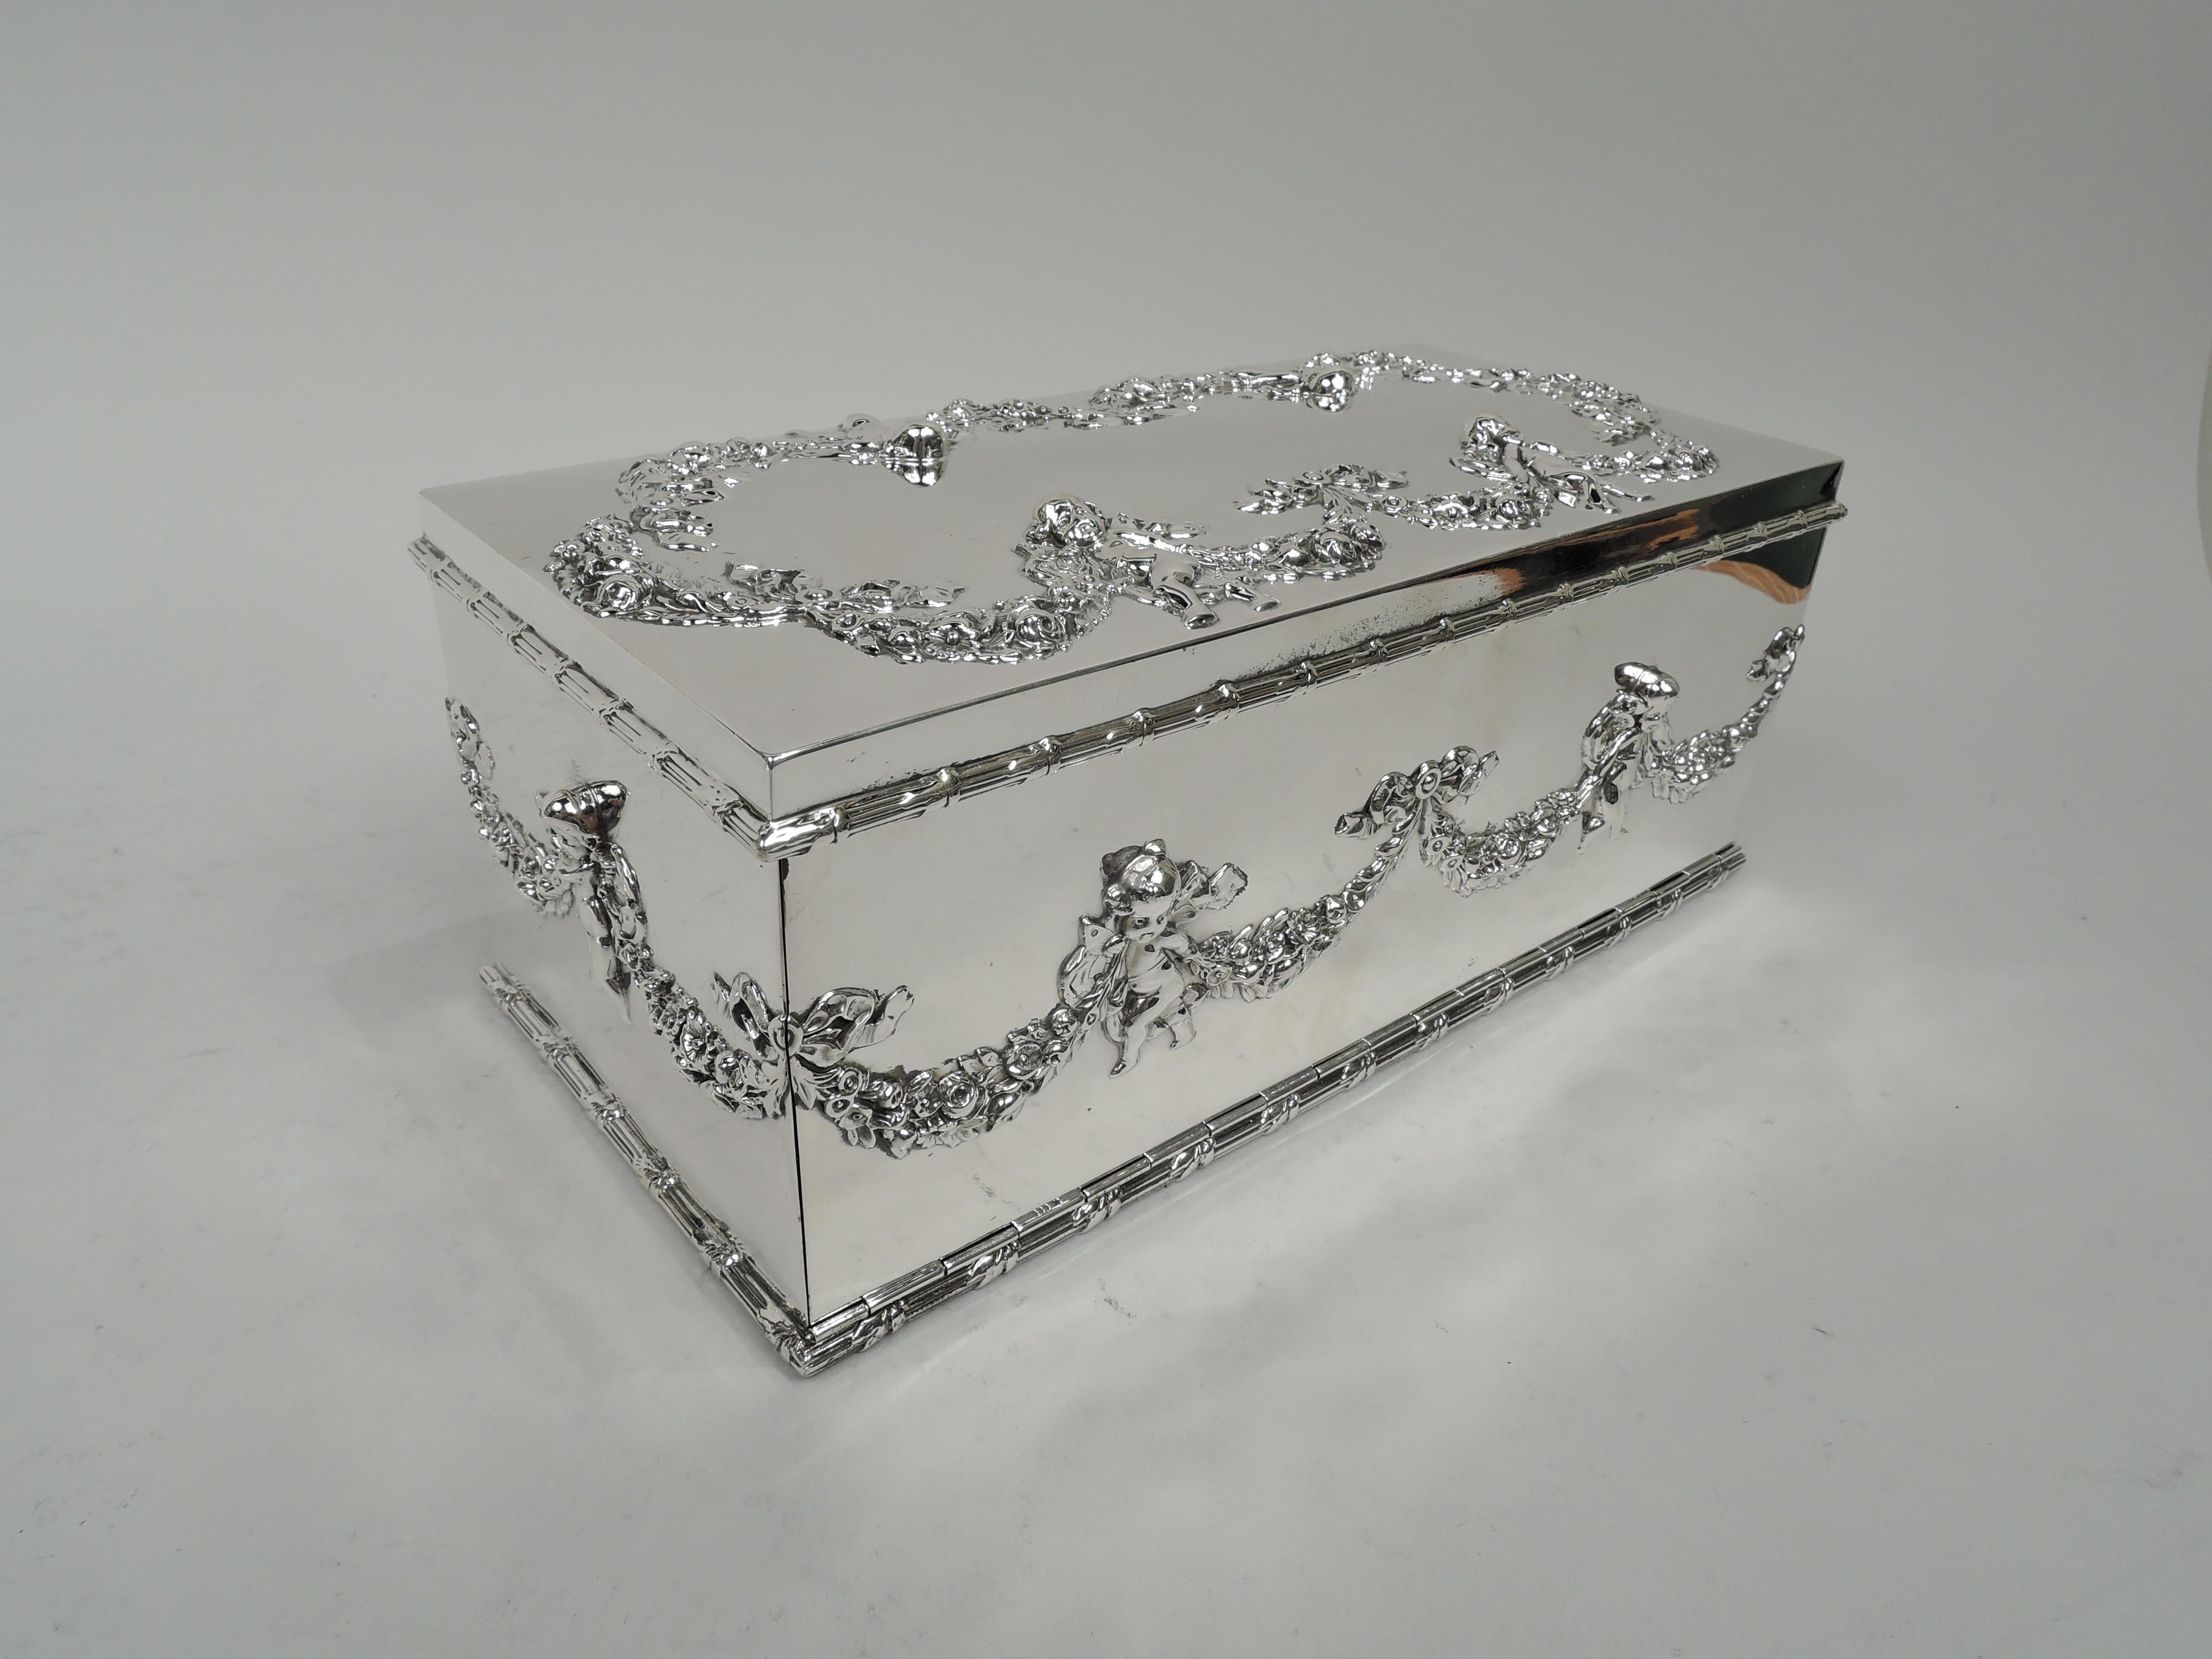 Regency Revival American Edwardian Regency Sterling Silver Jewelry Box with Cherubs For Sale